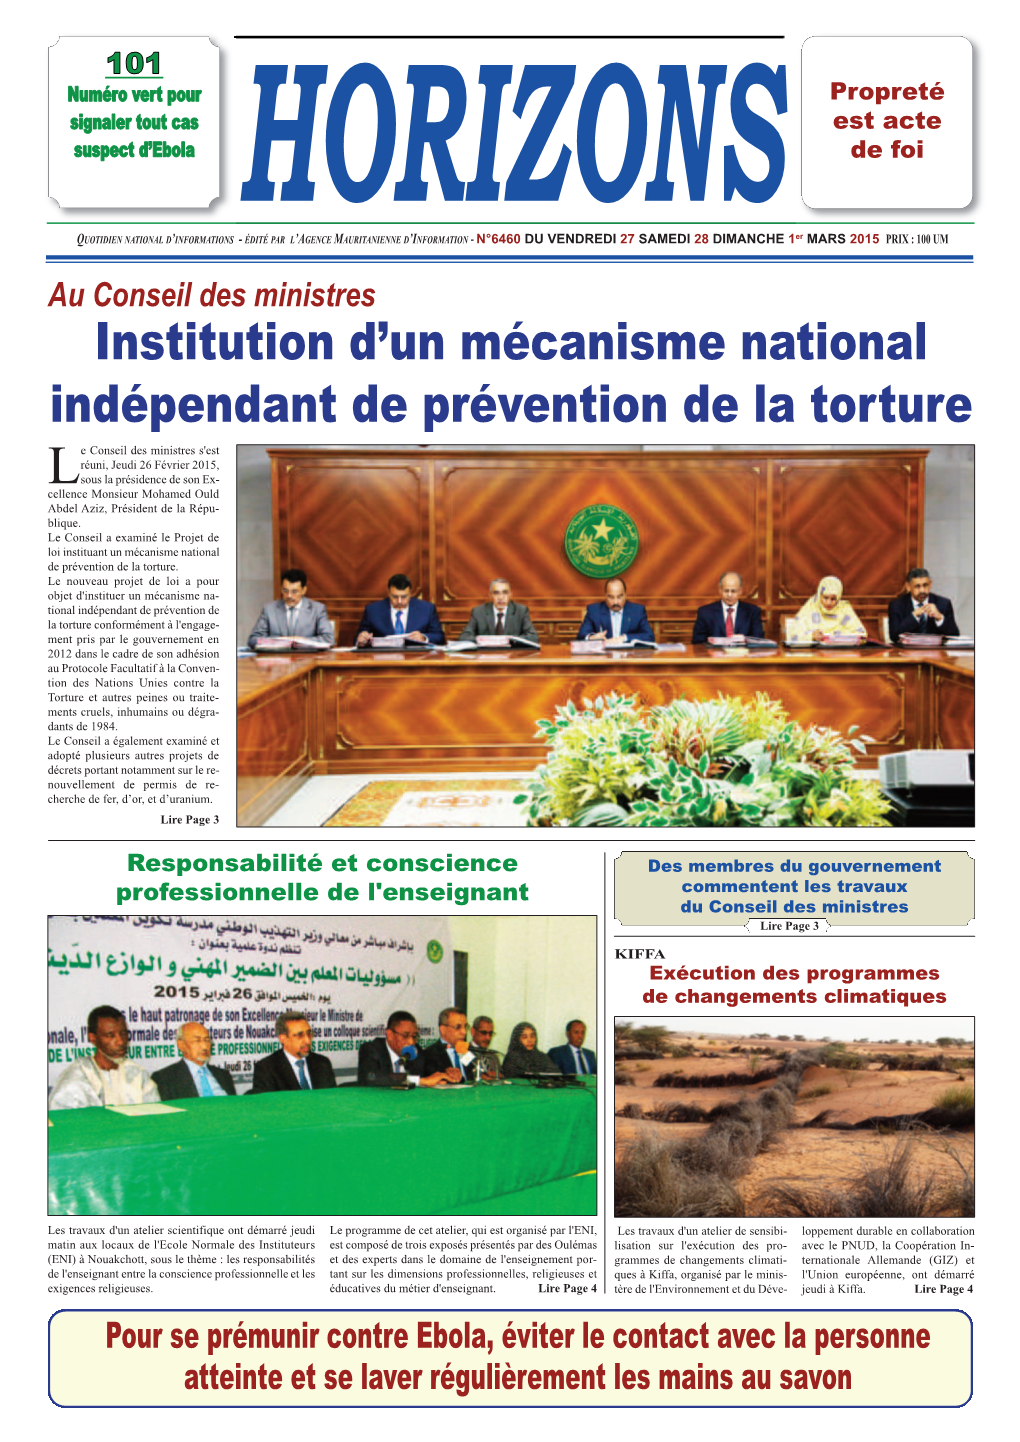 Institution D'un Mécanisme National Indépendant De Prévention De La Torture